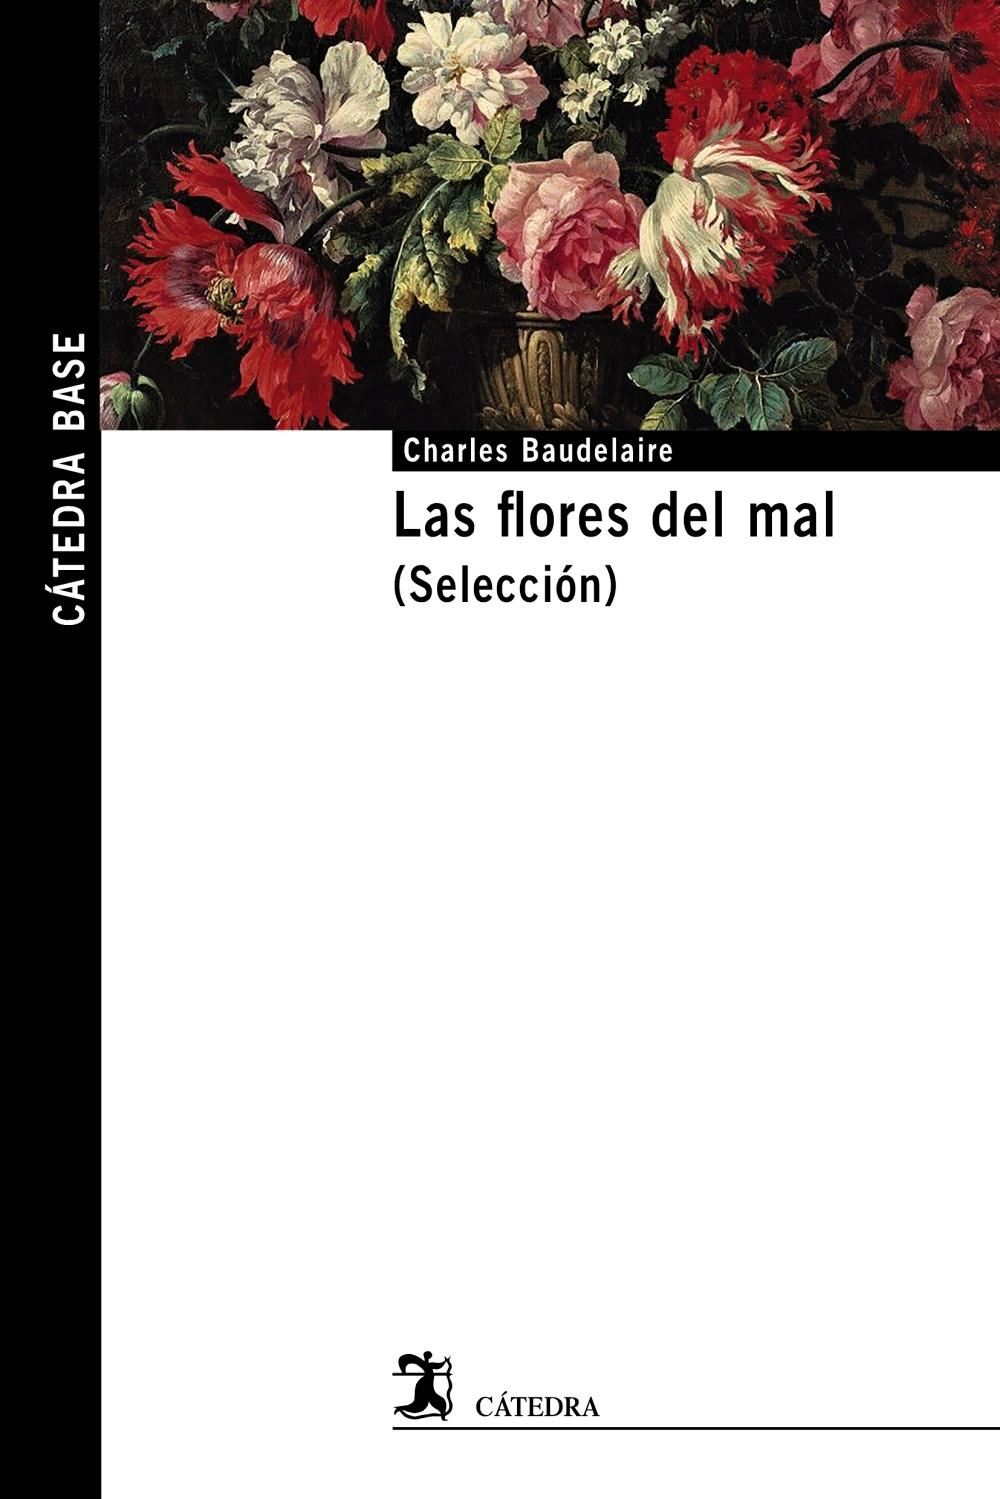 Las Flores del Mal "(Selección)". 